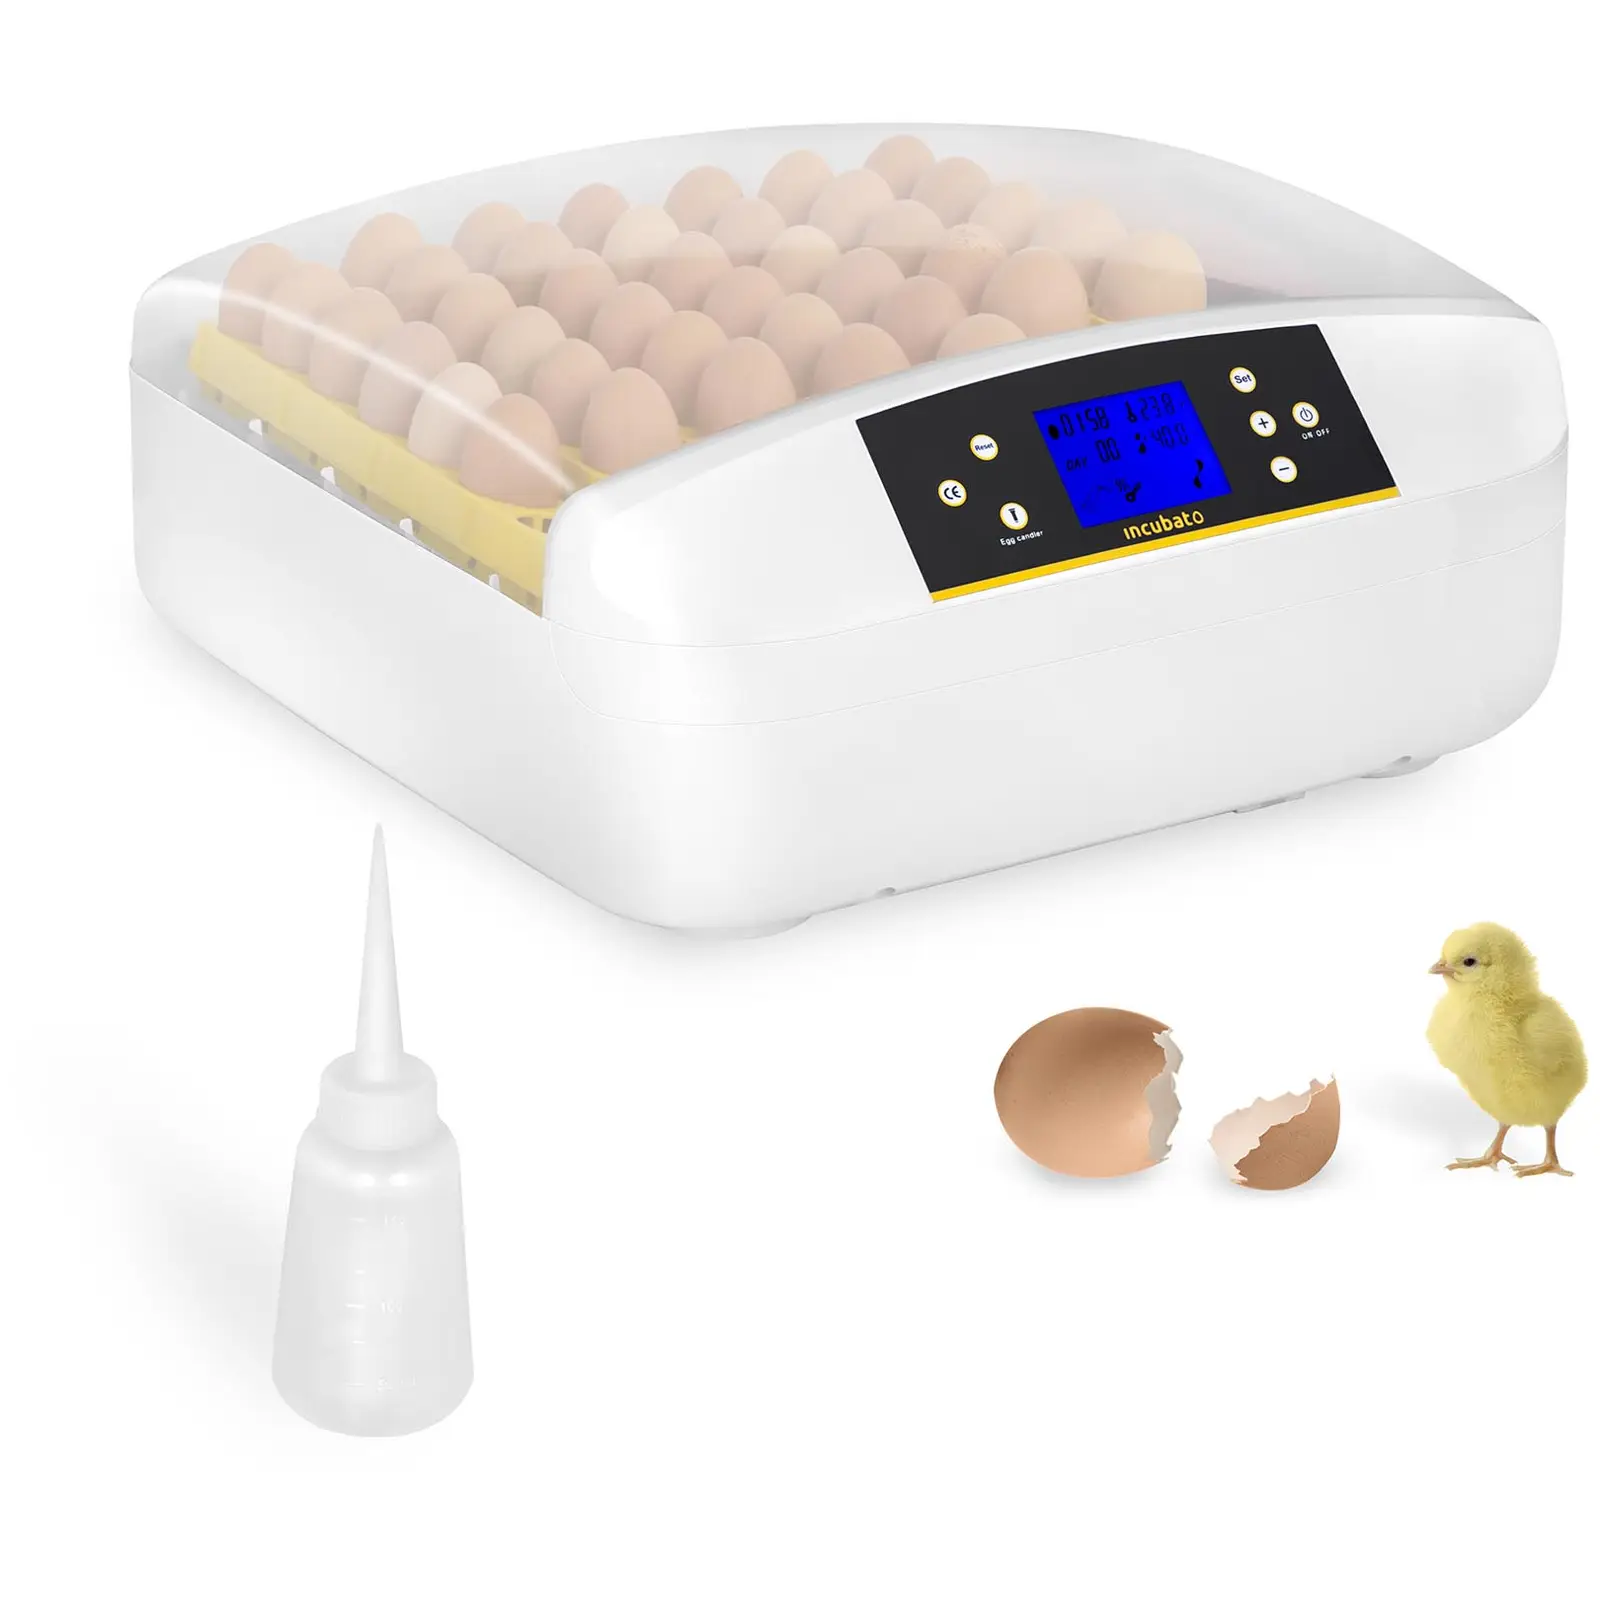 Incubatrice per uova professionale - 56 uova - Distributore d’acqua - Completamente automatica